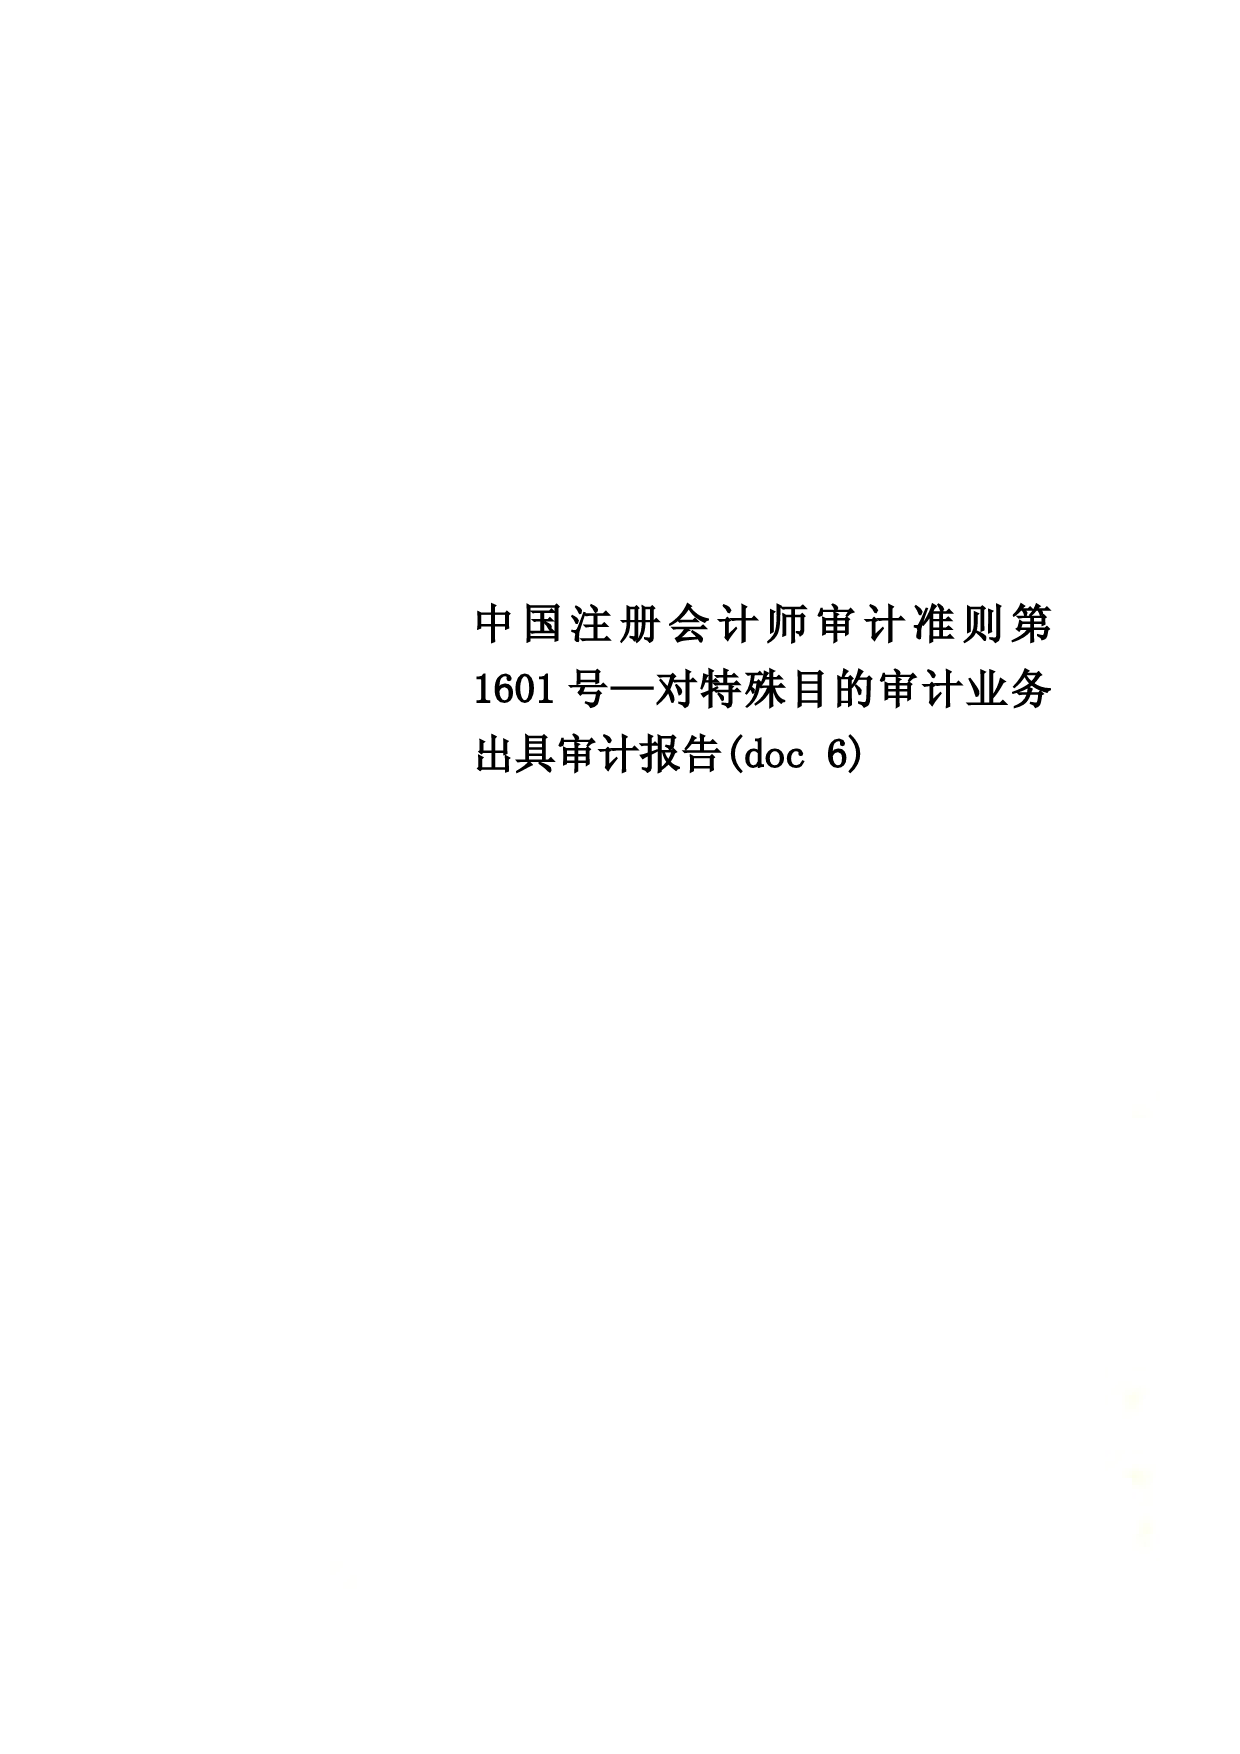 中国注册会计师审计准则第1601号—对特殊目的审计业务出具审计报告(doc-6)